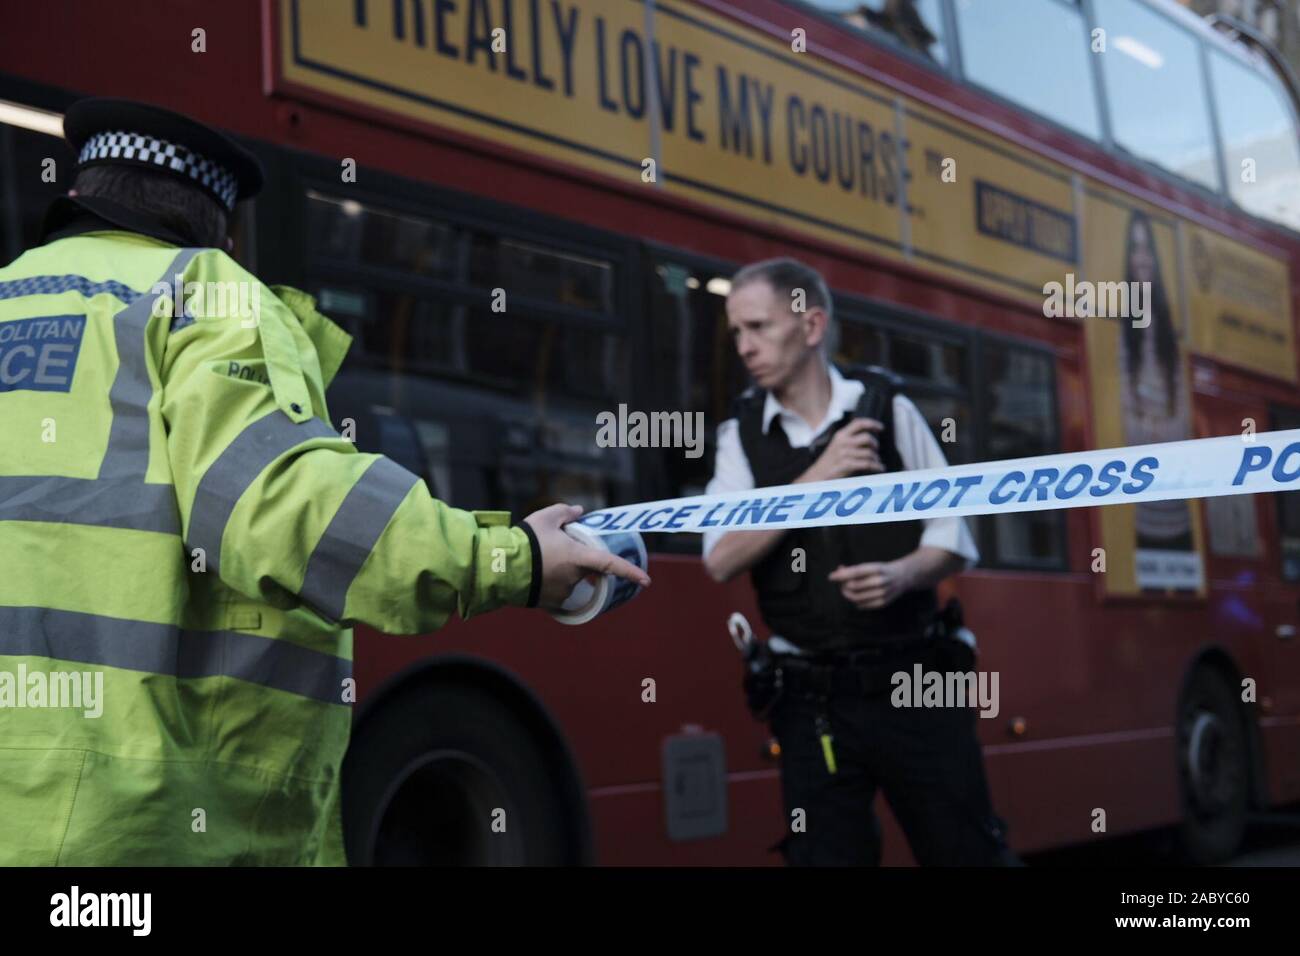 Londra, Regno Unito. 29 Nov 2019. Un accoltellato l attacco su London Bridge è trattata dalla polizia come "terrore" correlati, il Met ha detto. Un certo numero di persone si ritiene che sia stato ferito in un incidente a London Bridge. Credito: RayArt grafica/Alamy Live News Foto Stock